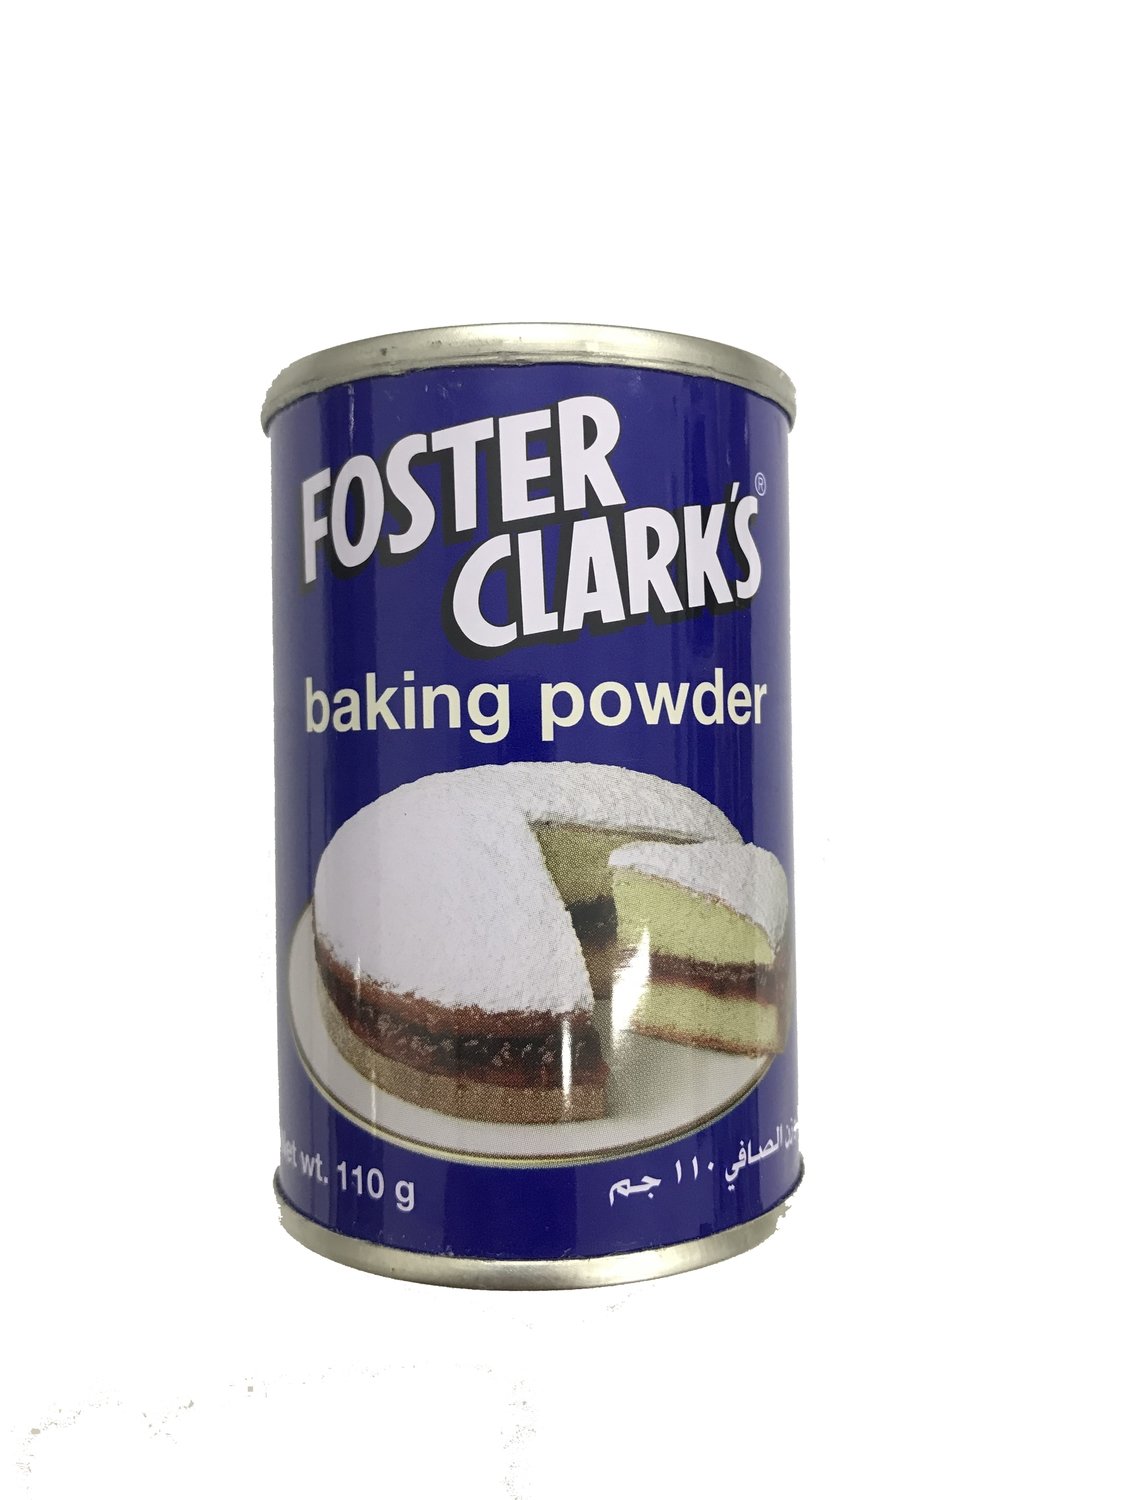 Foster Clark's Baking Powder 110g